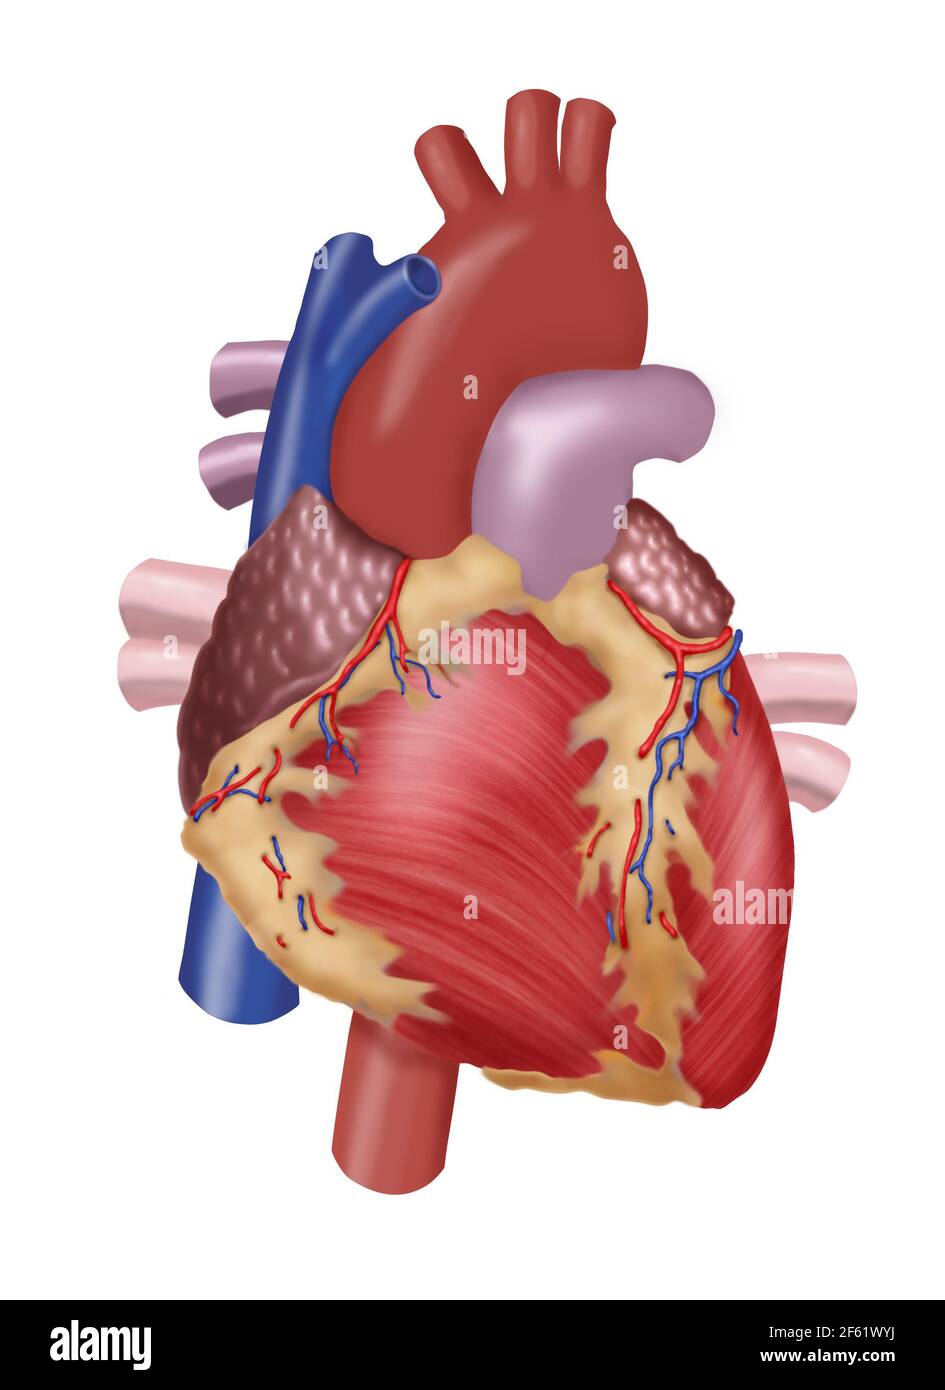 Ilustración del corazón humano Foto de stock